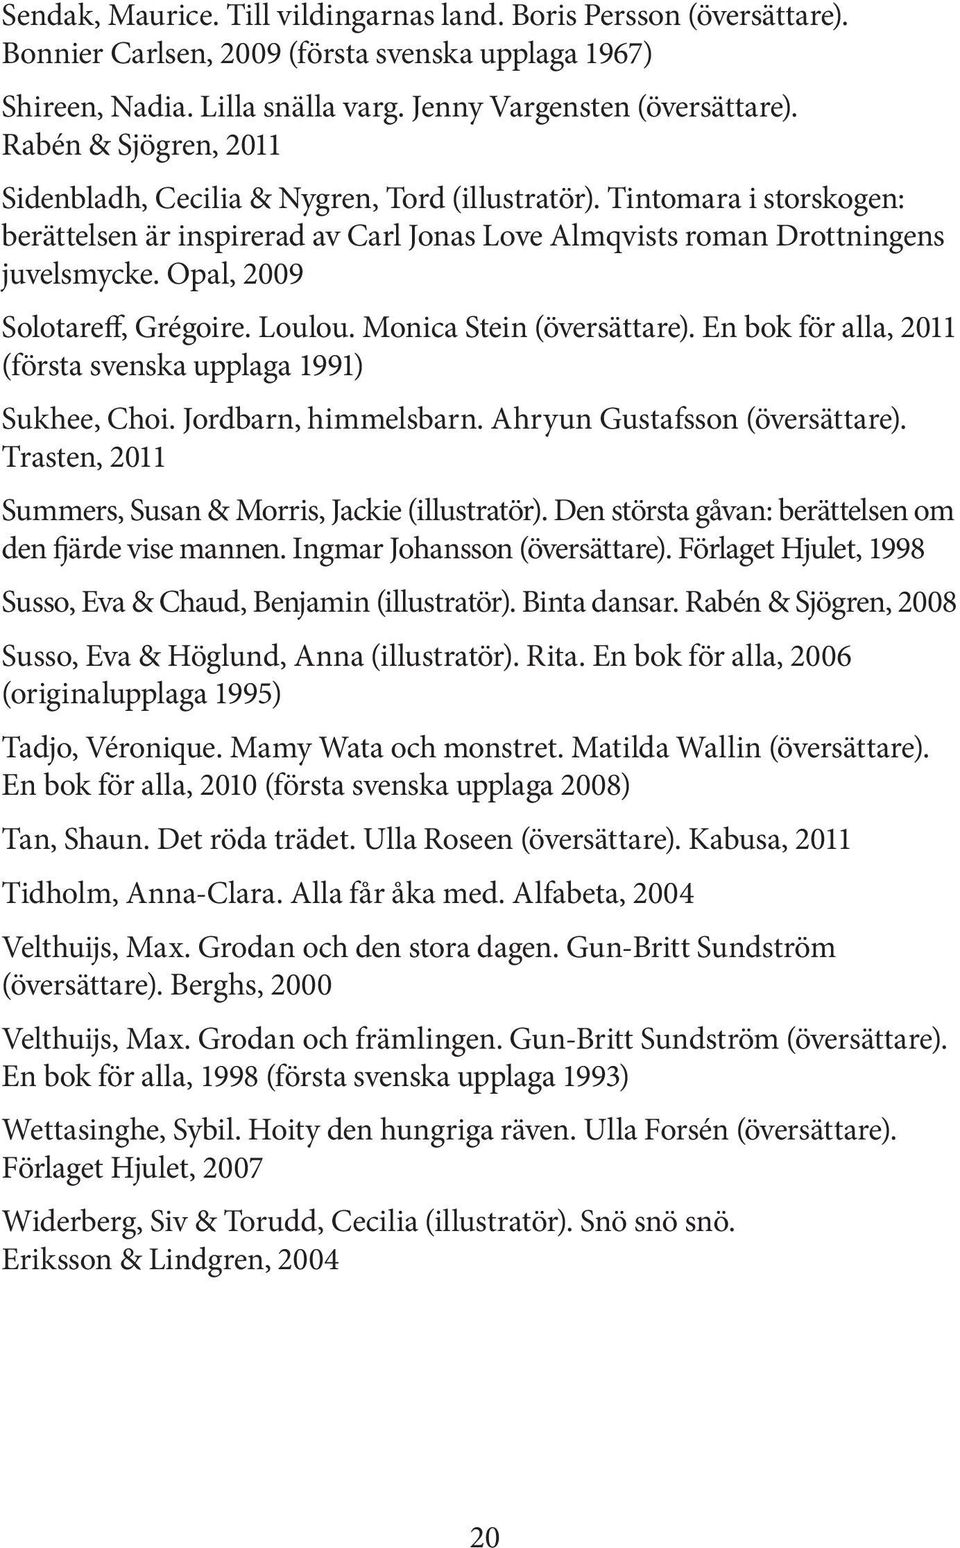 Opal, 2009 Solotareff, Grégoire. Loulou. Monica Stein (översättare). En bok för alla, 2011 (första svenska upplaga 1991) Sukhee, Choi. Jordbarn, himmelsbarn. Ahryun Gustafsson (översättare).